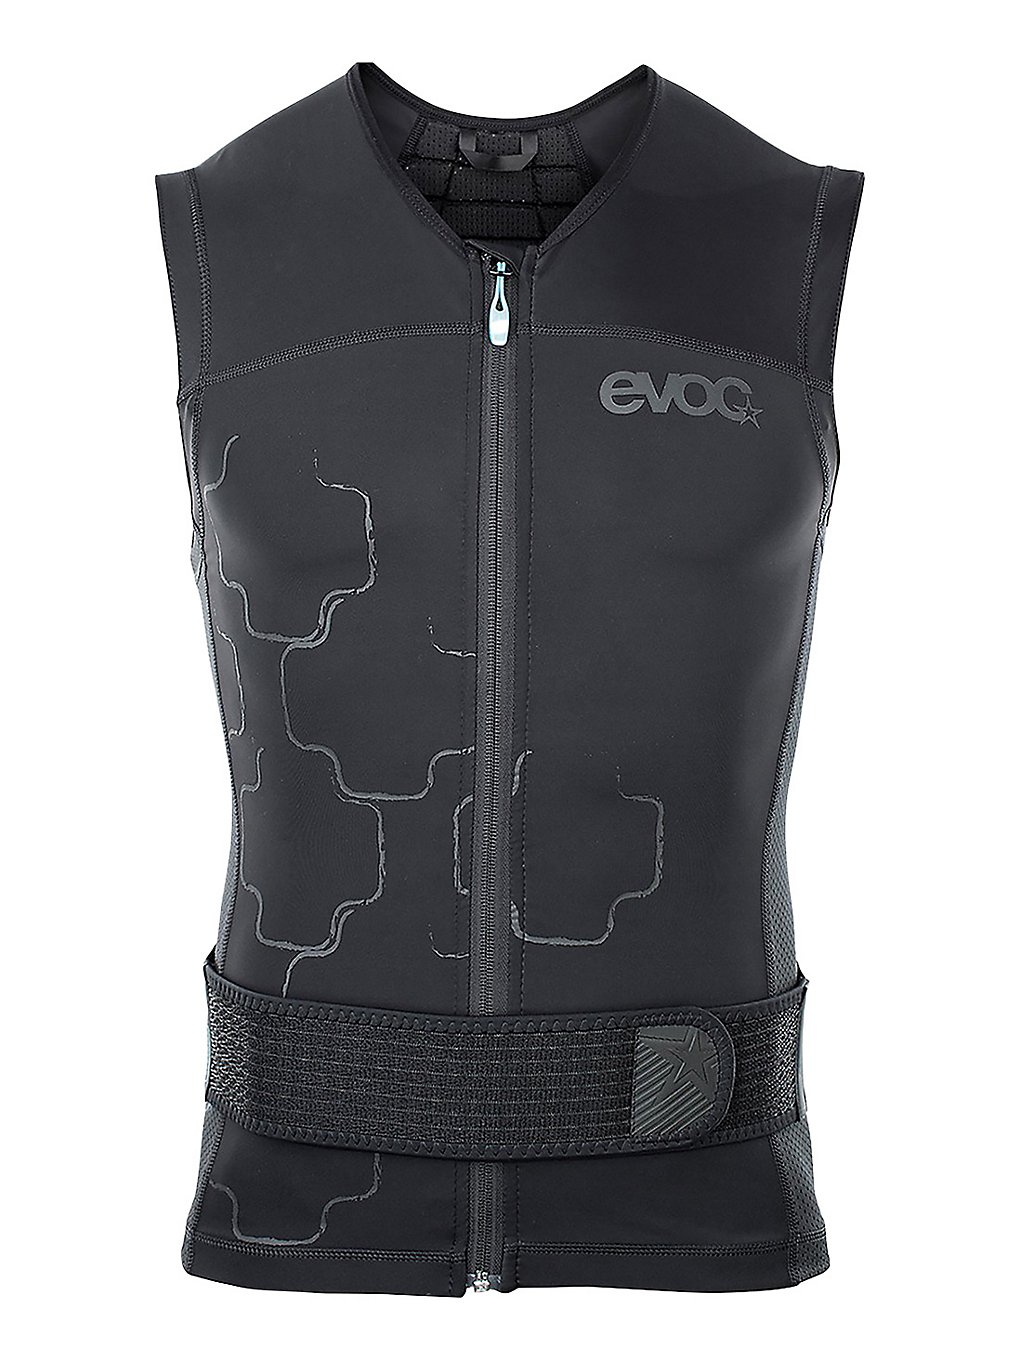 Evoc Protector Lite Vest Back Protector black kaufen